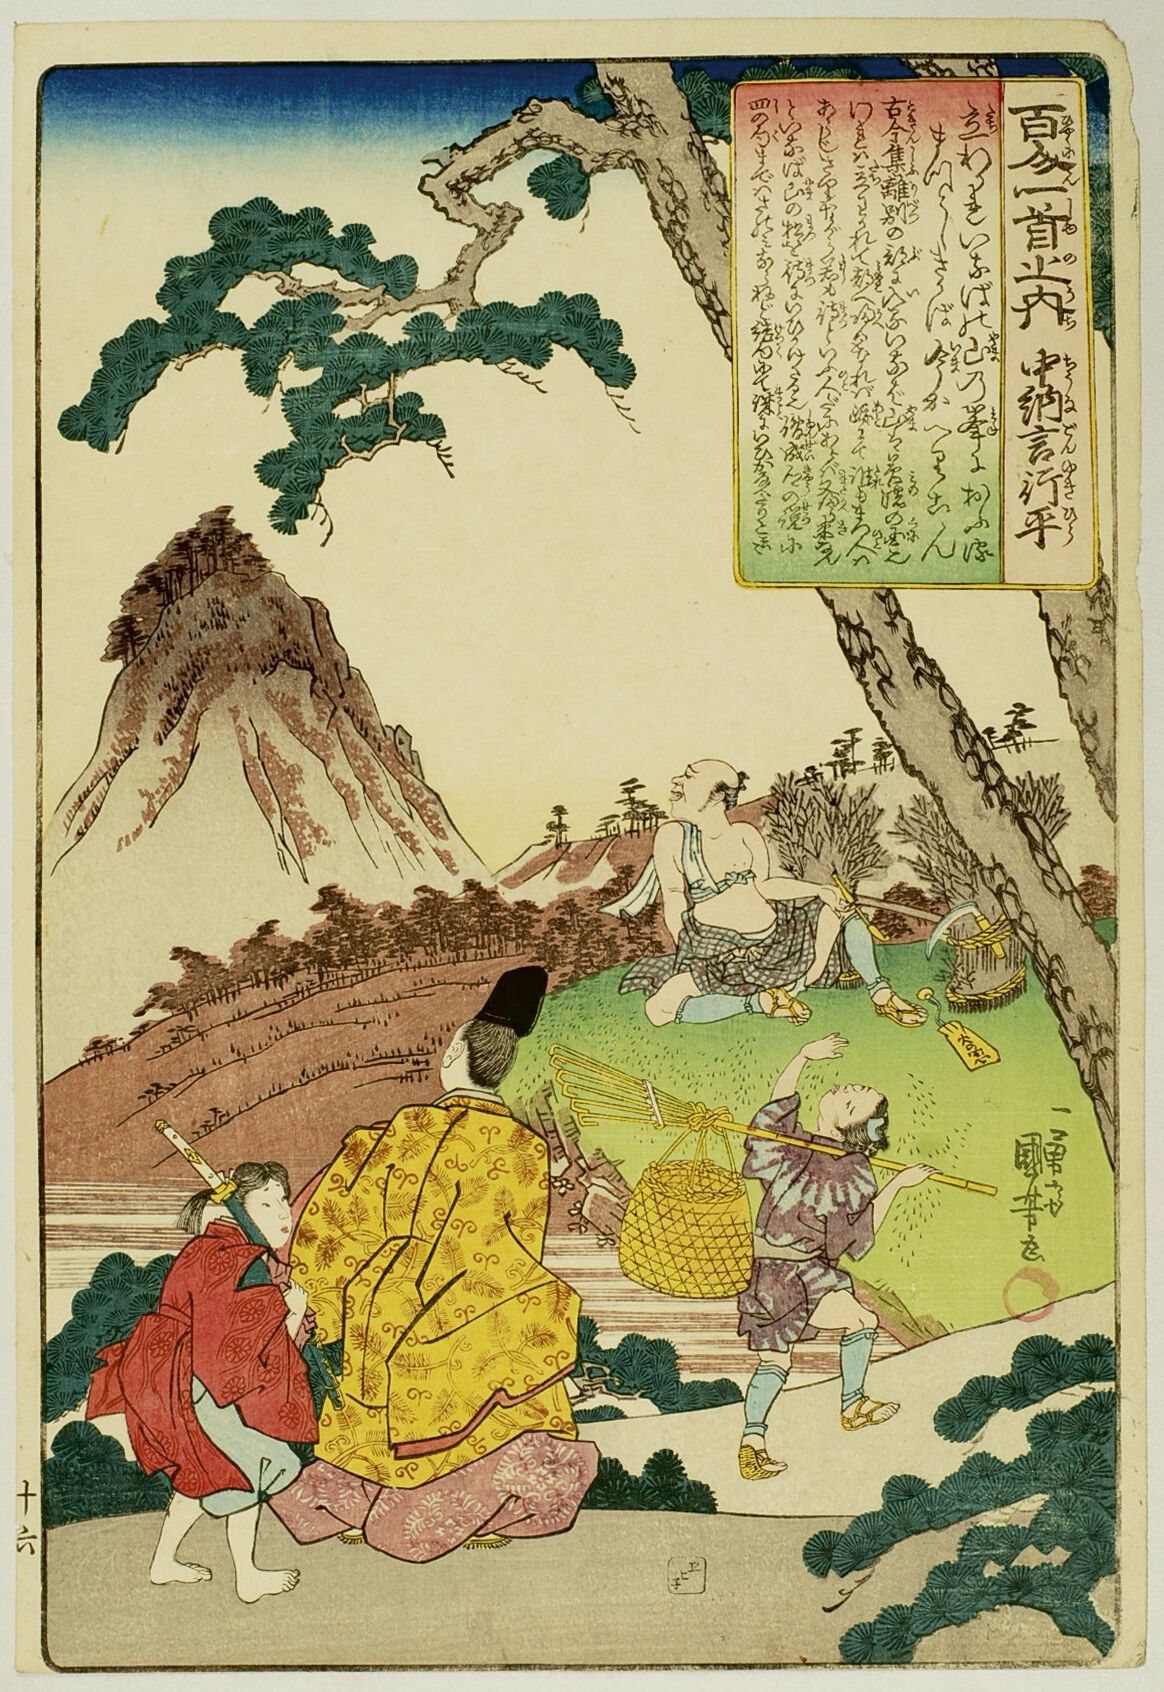 Null 宇多川国义 (1797-1861)
百人一首》系列中的 "大板"（Oban tate-e），板块是春宫雪平，诗人带着他的书页行走，望着远处的稻田山。 &hellip;